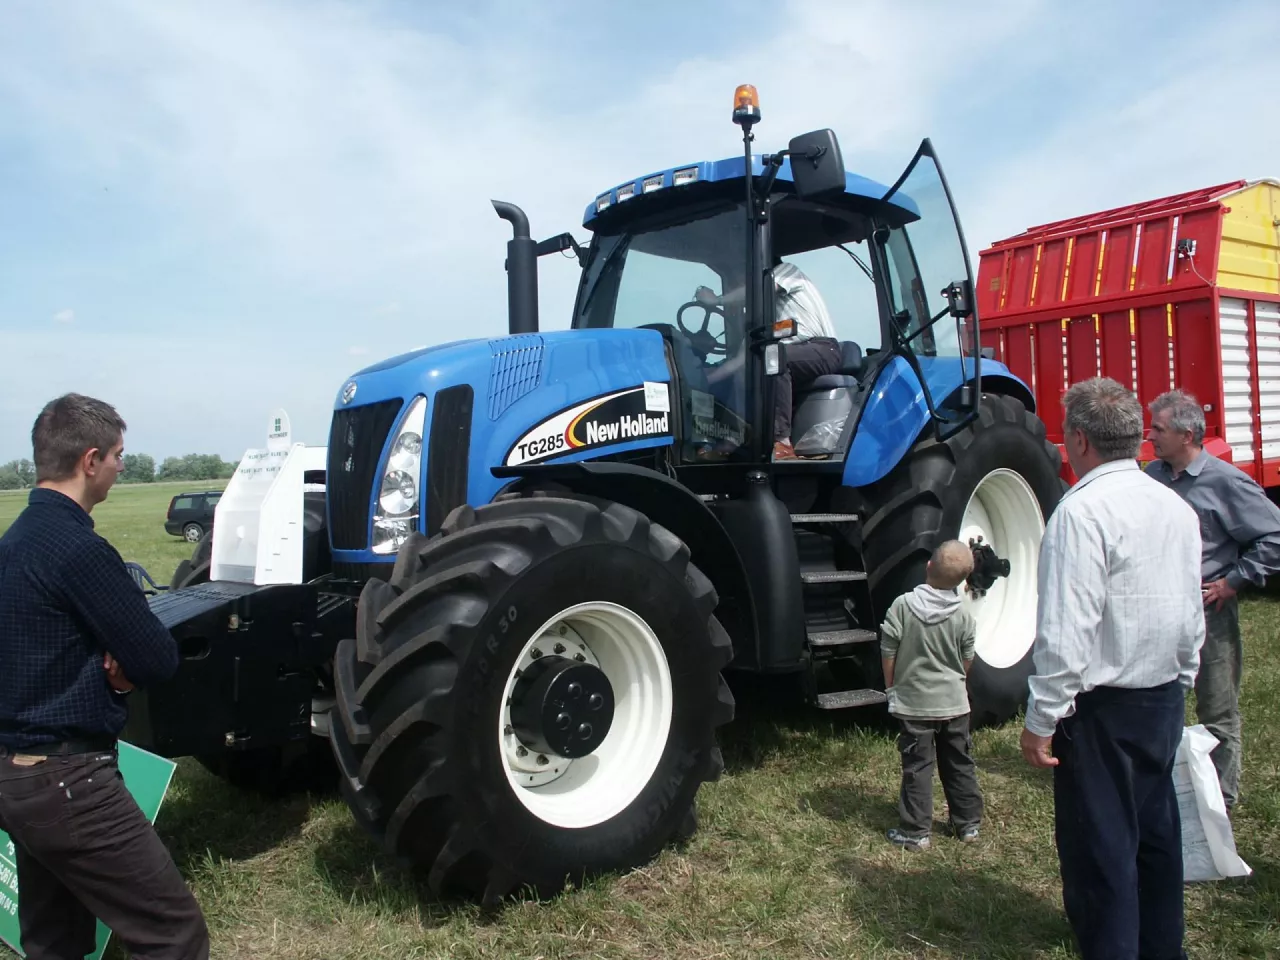 W 2005 roku liderem polskiego rynku sprzedaży traktorów (8046 szt.) był Zetor (2048 szt.), następnie Belarus (1748 szt.), Ursus (811 szt.), New Holland (771 szt.) i John Deere (570 szt.). Trio liderów przegrało walkę z technologią i normami spalin.